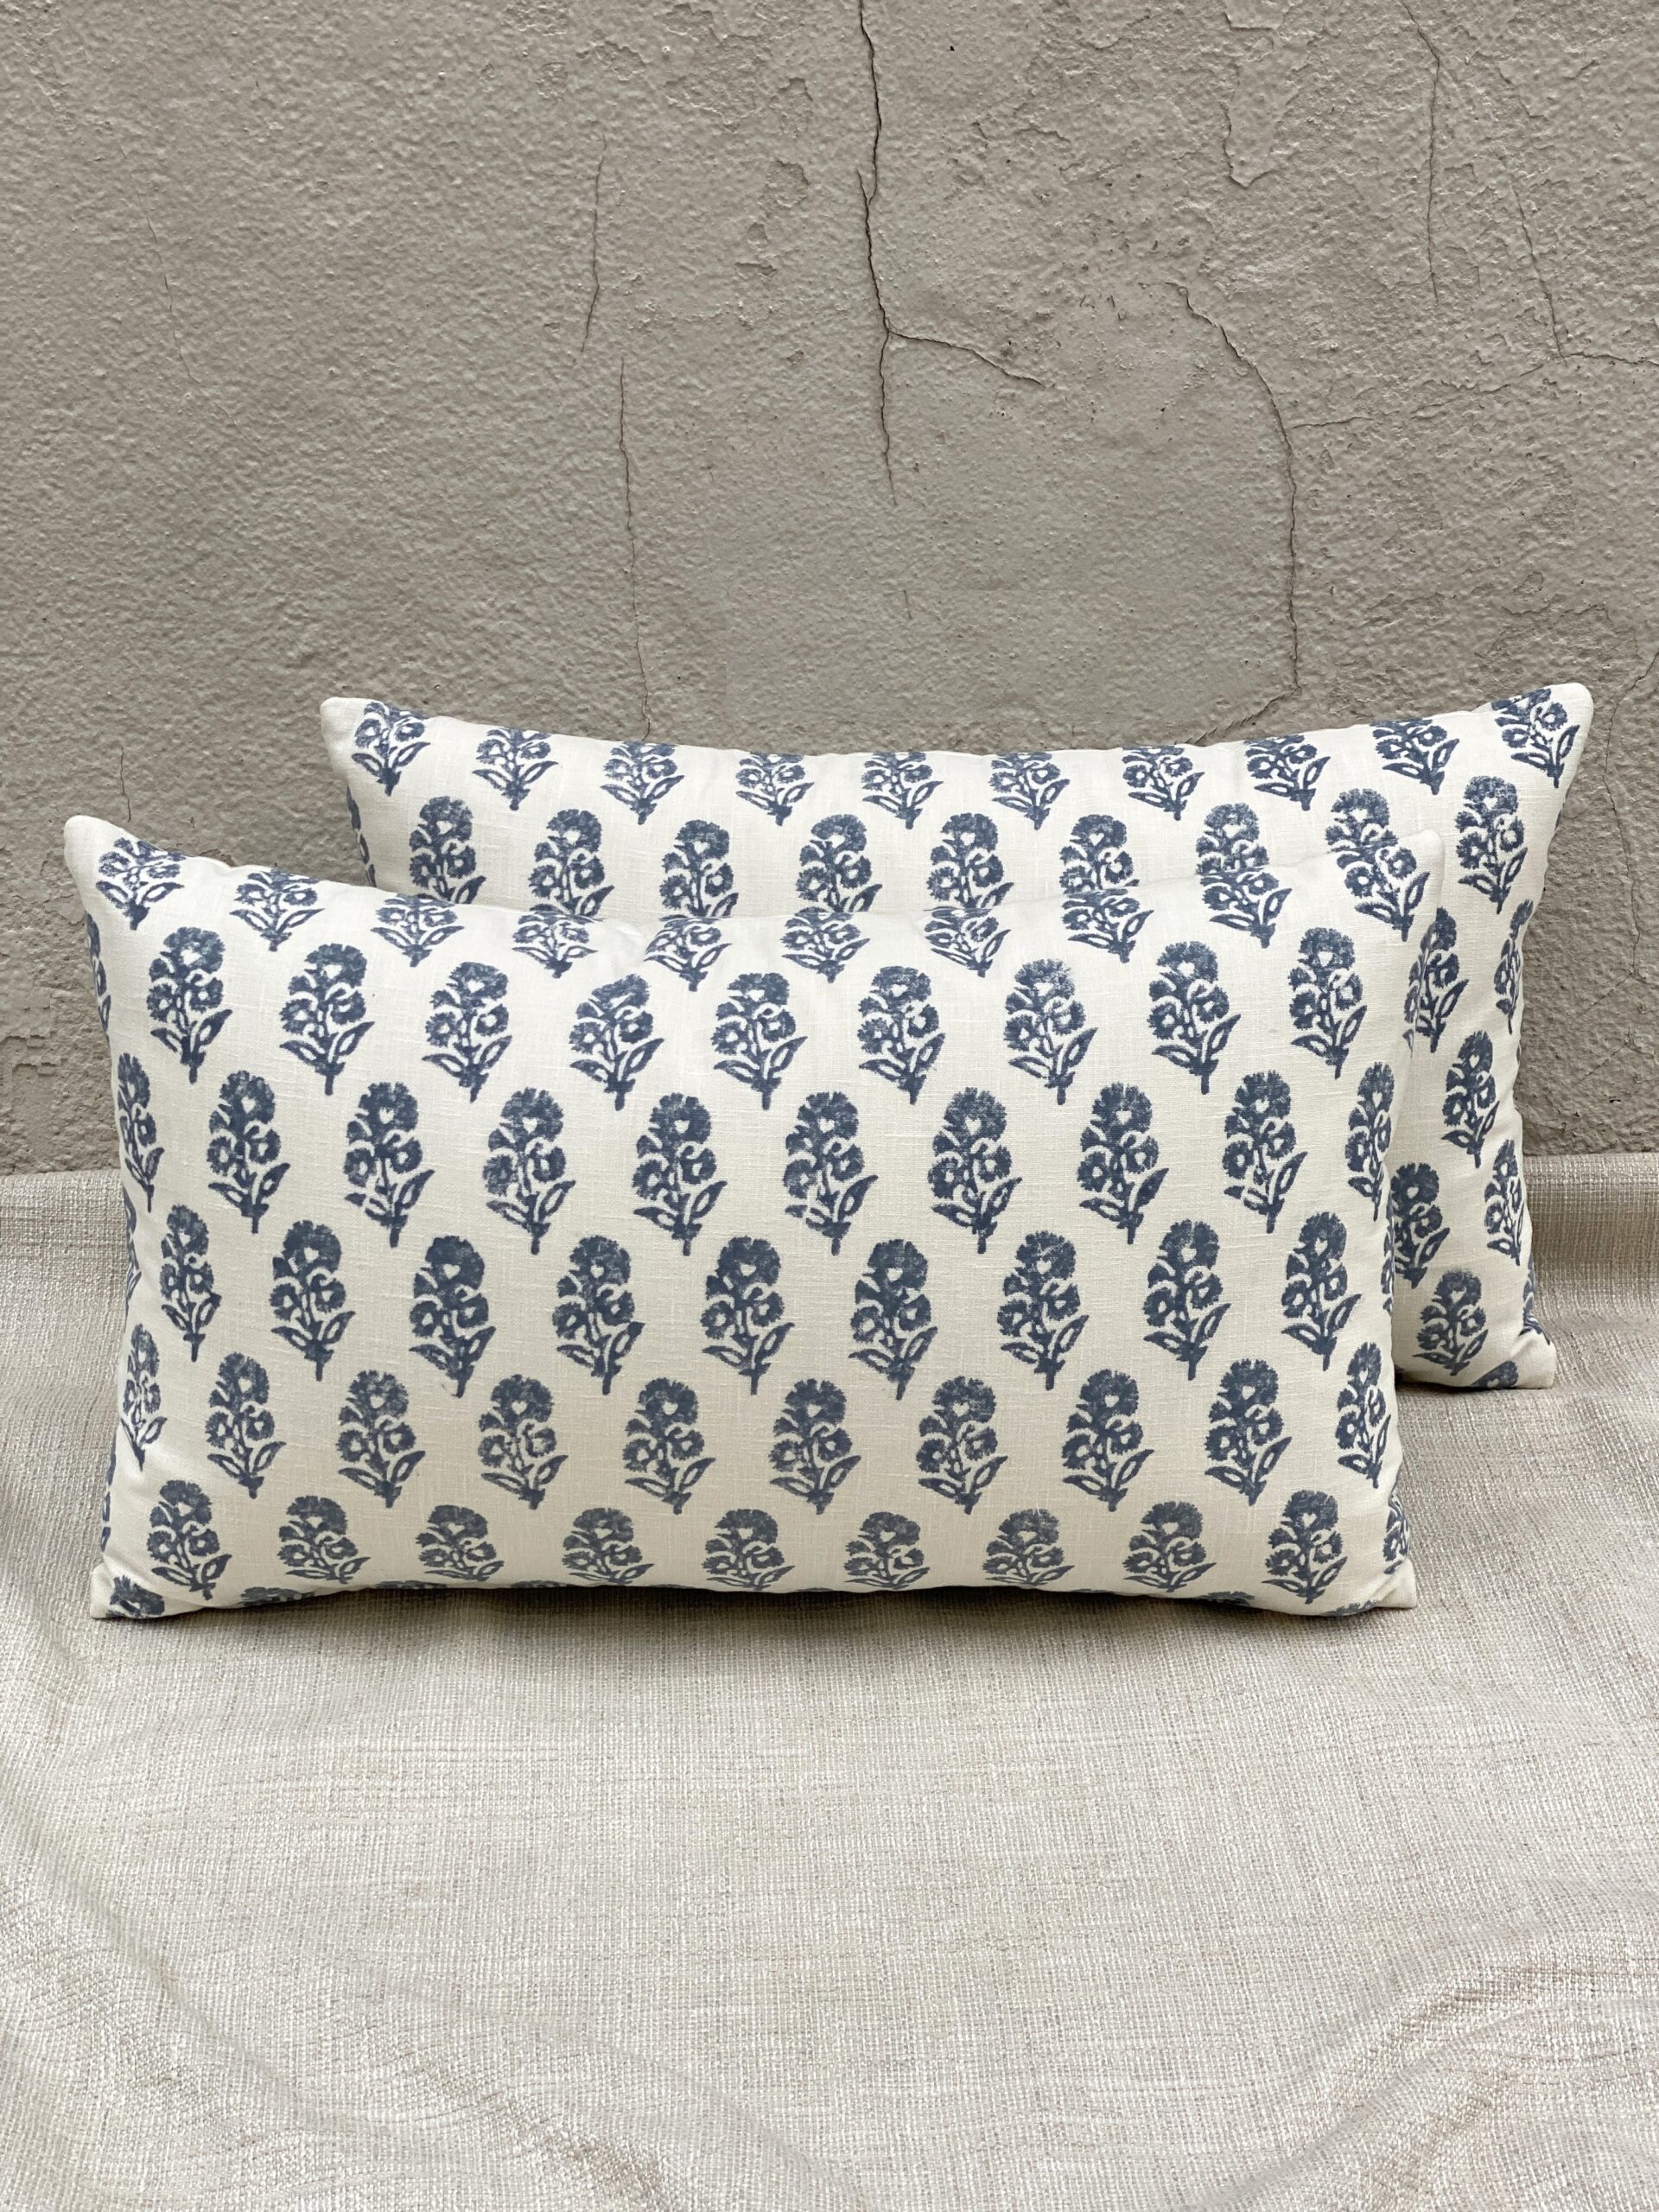 Ralph Lauren Allie Blockprint Pillows